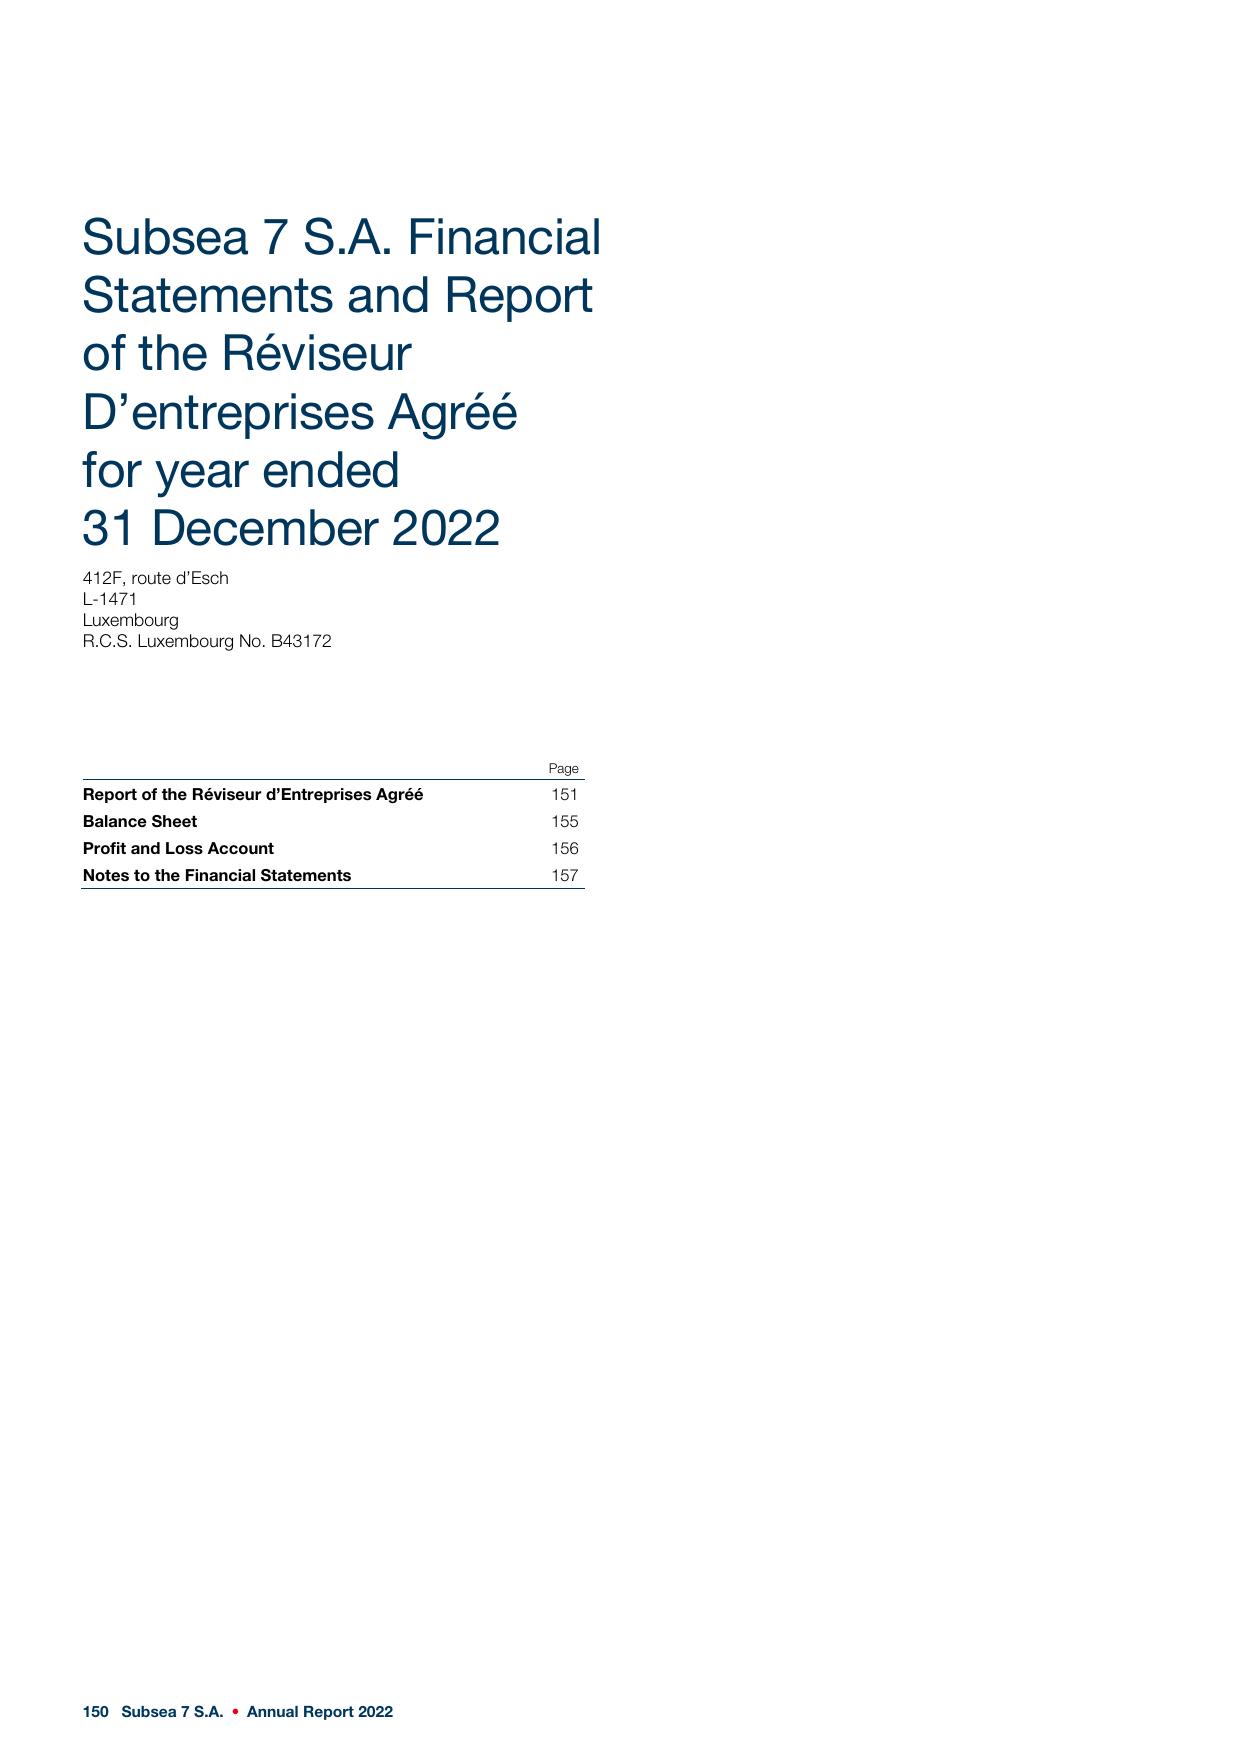 BOQII 2022 Annual Report